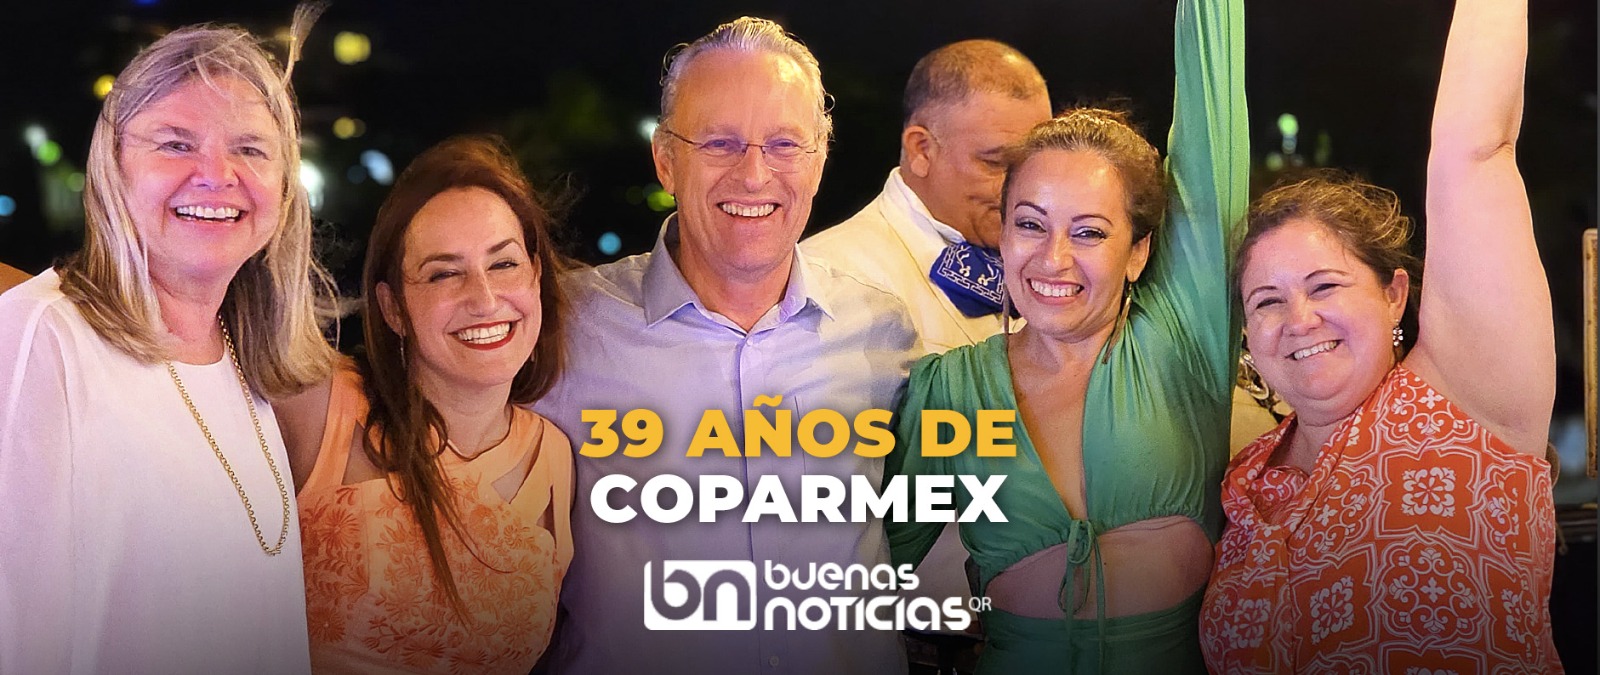 Coparmex, de fiesta; cumple 39 años en Quintana Roo (VIDEO)